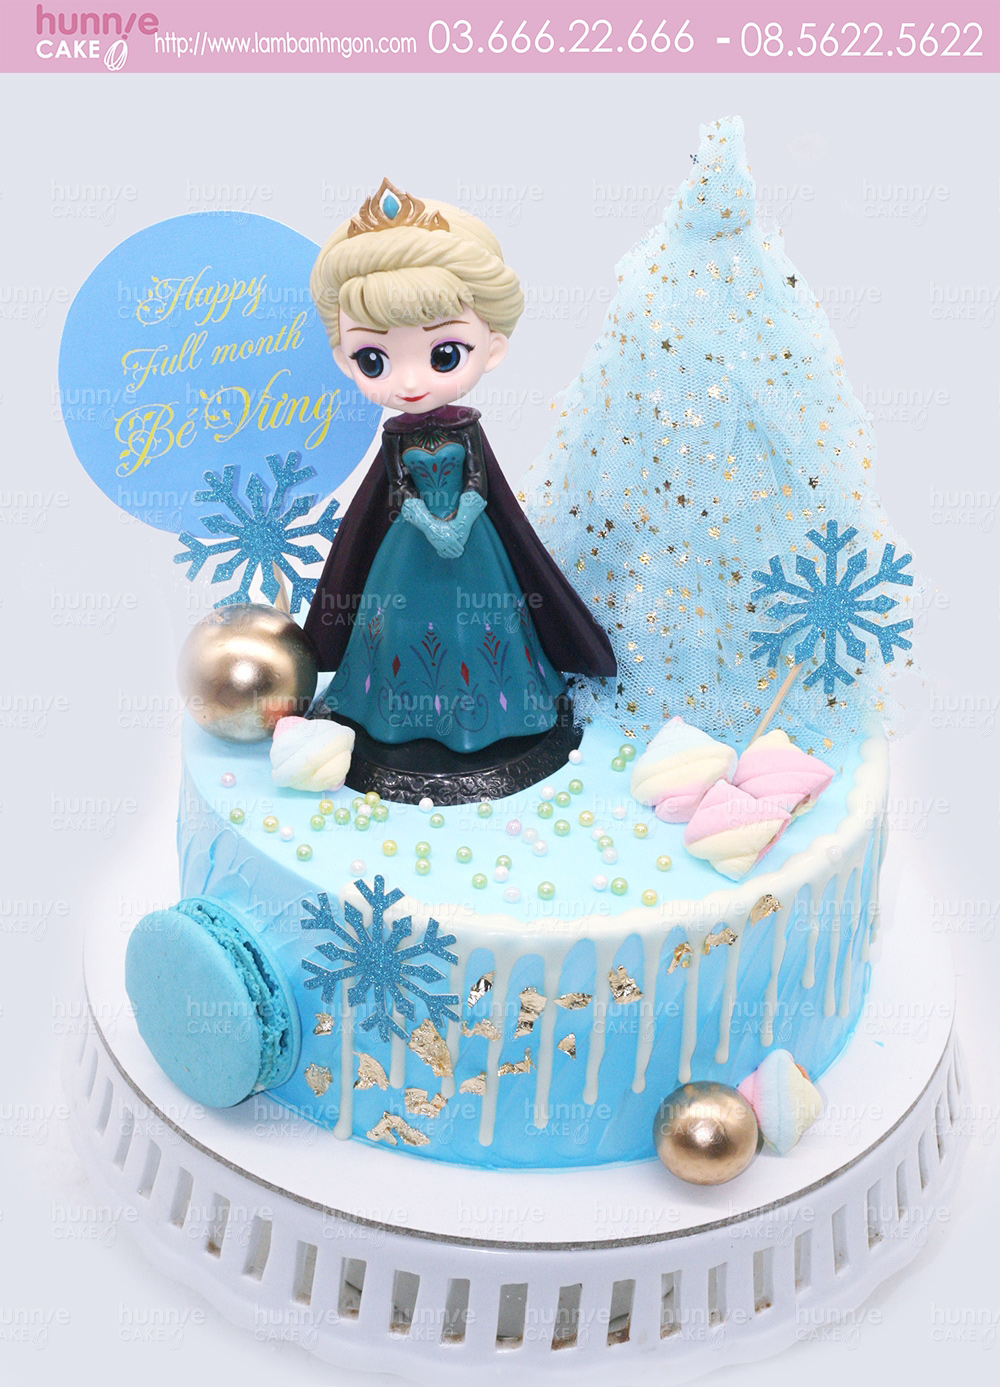 Bánh gato sinh nhật topper công chúa tuyết Elsa mặc áo choàng duyên dáng và xinh đẹp 5724 - Bánh ngon đẹp